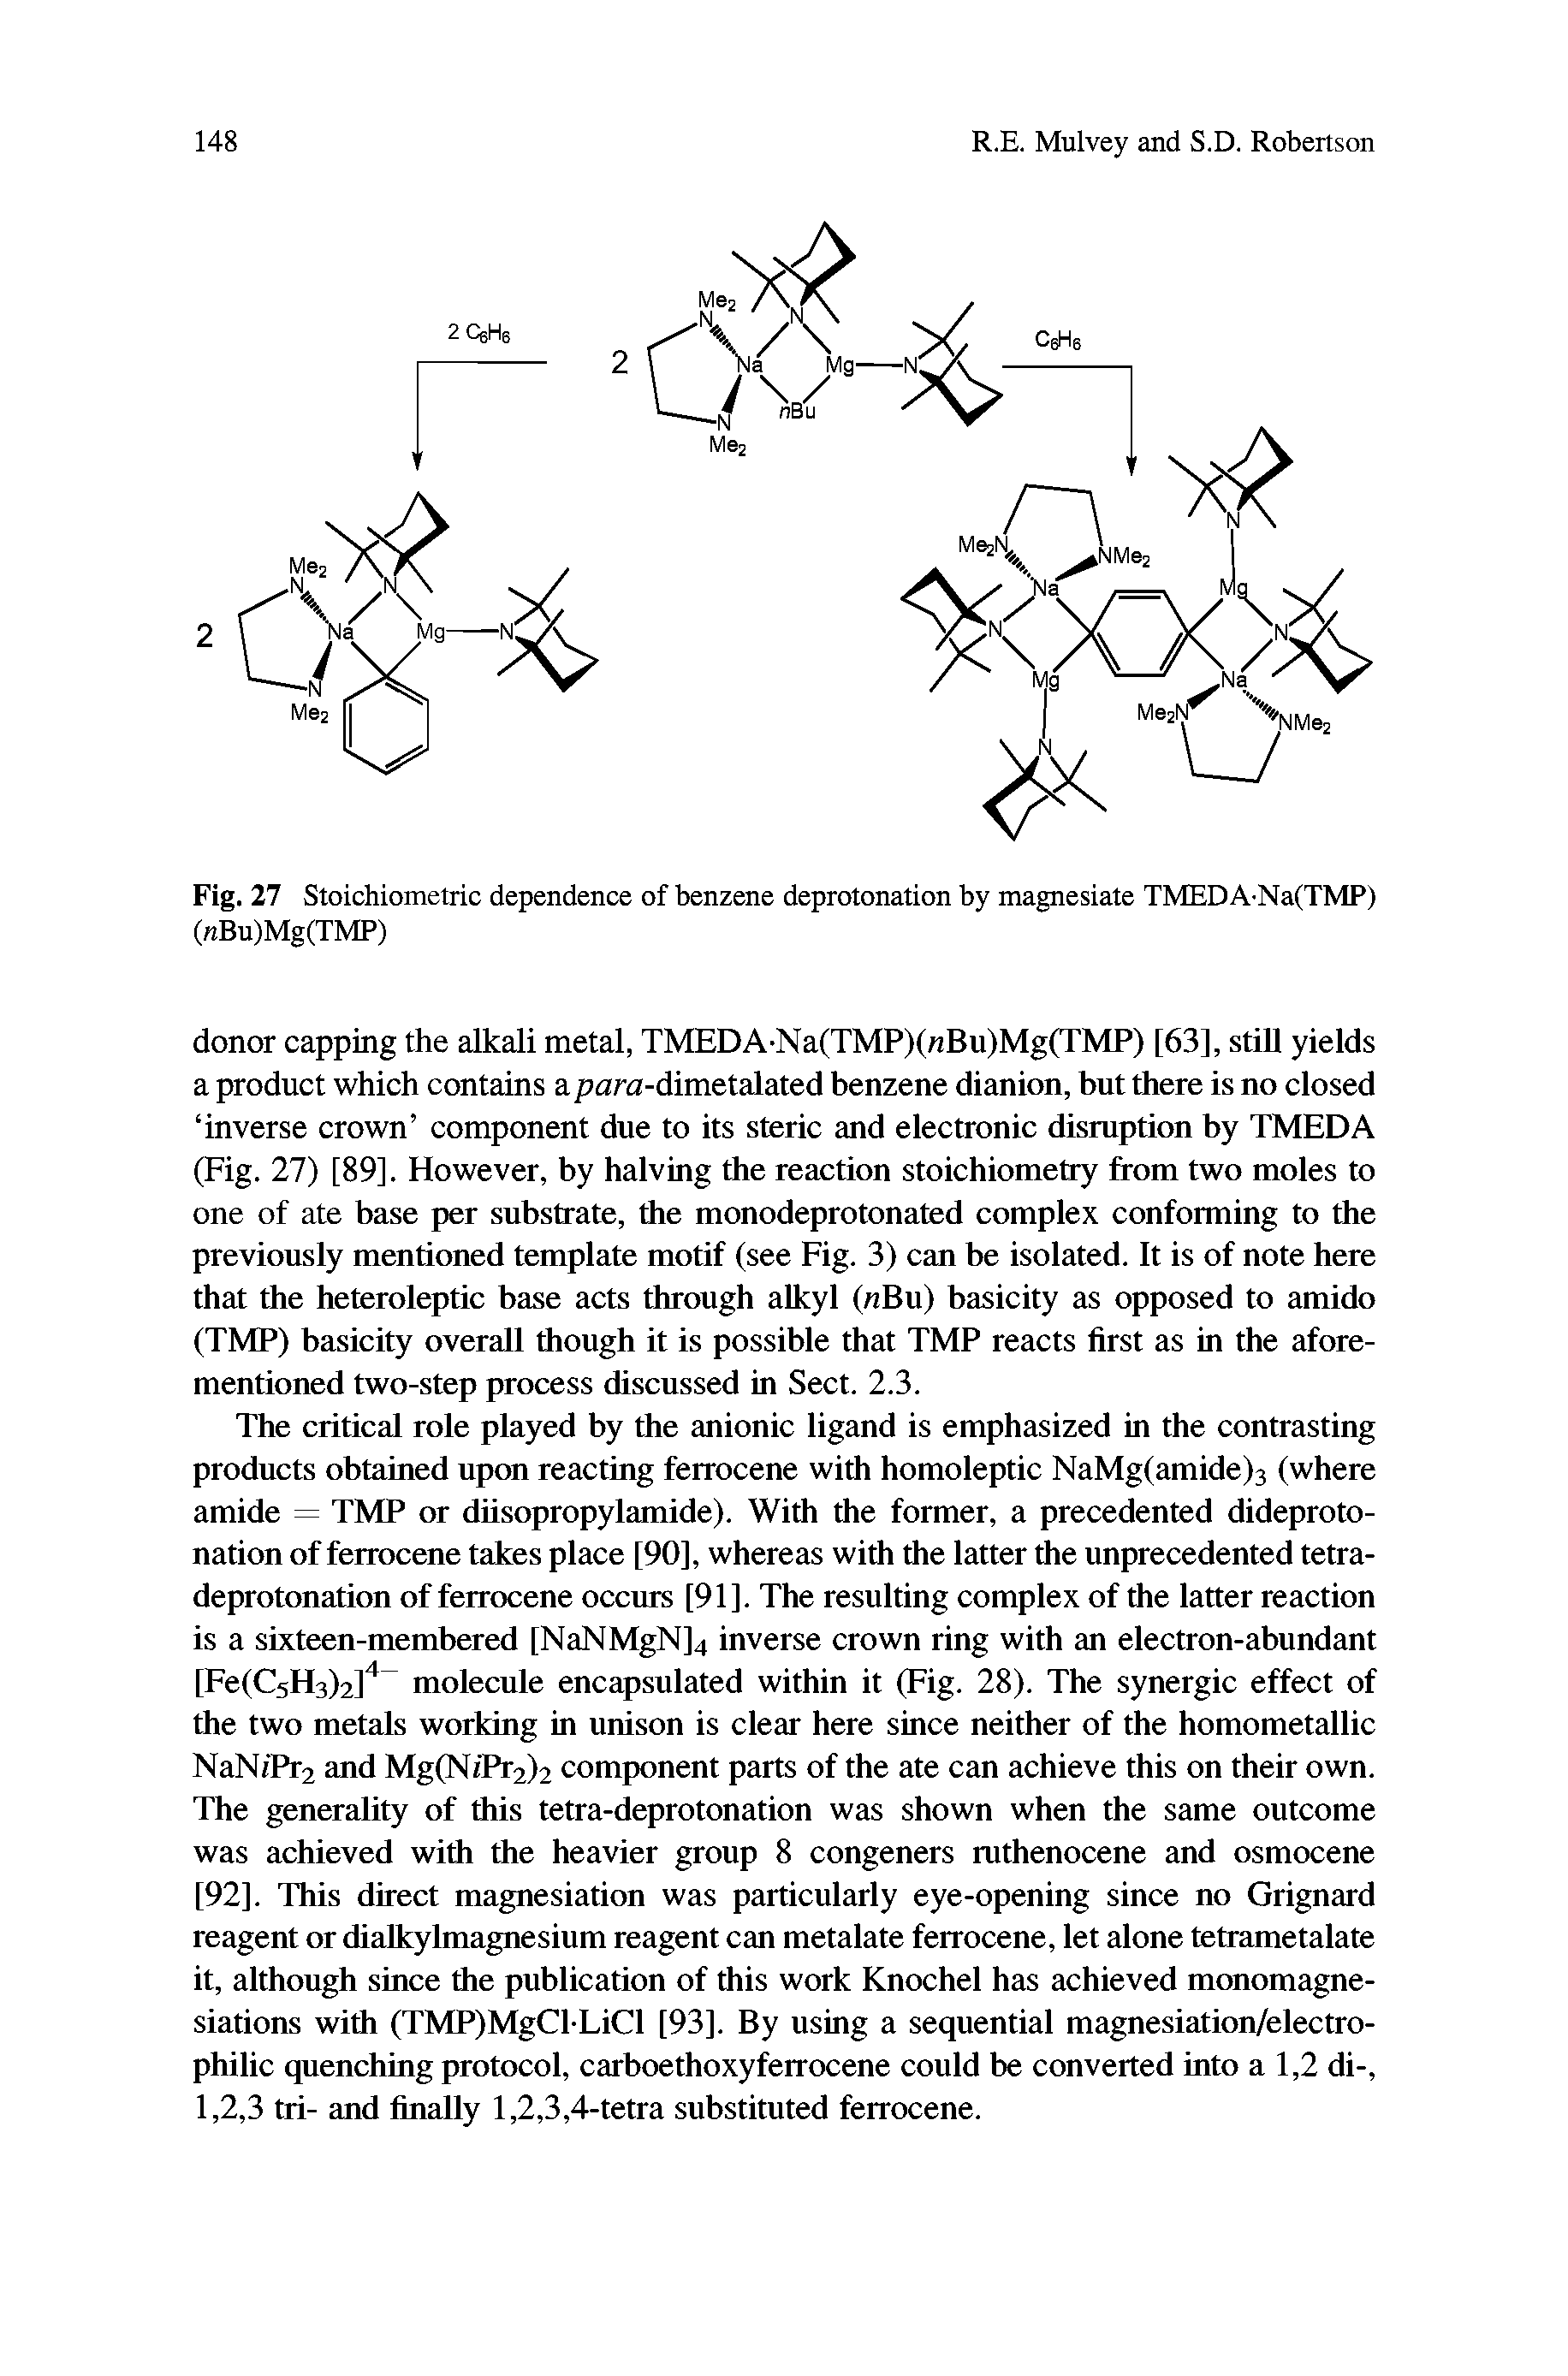 Fig. 27 Stoichiometric dependence of benzene deprotonation by magnesiate TMEDA Na(TMP) (nBu)Mg(TMP)...